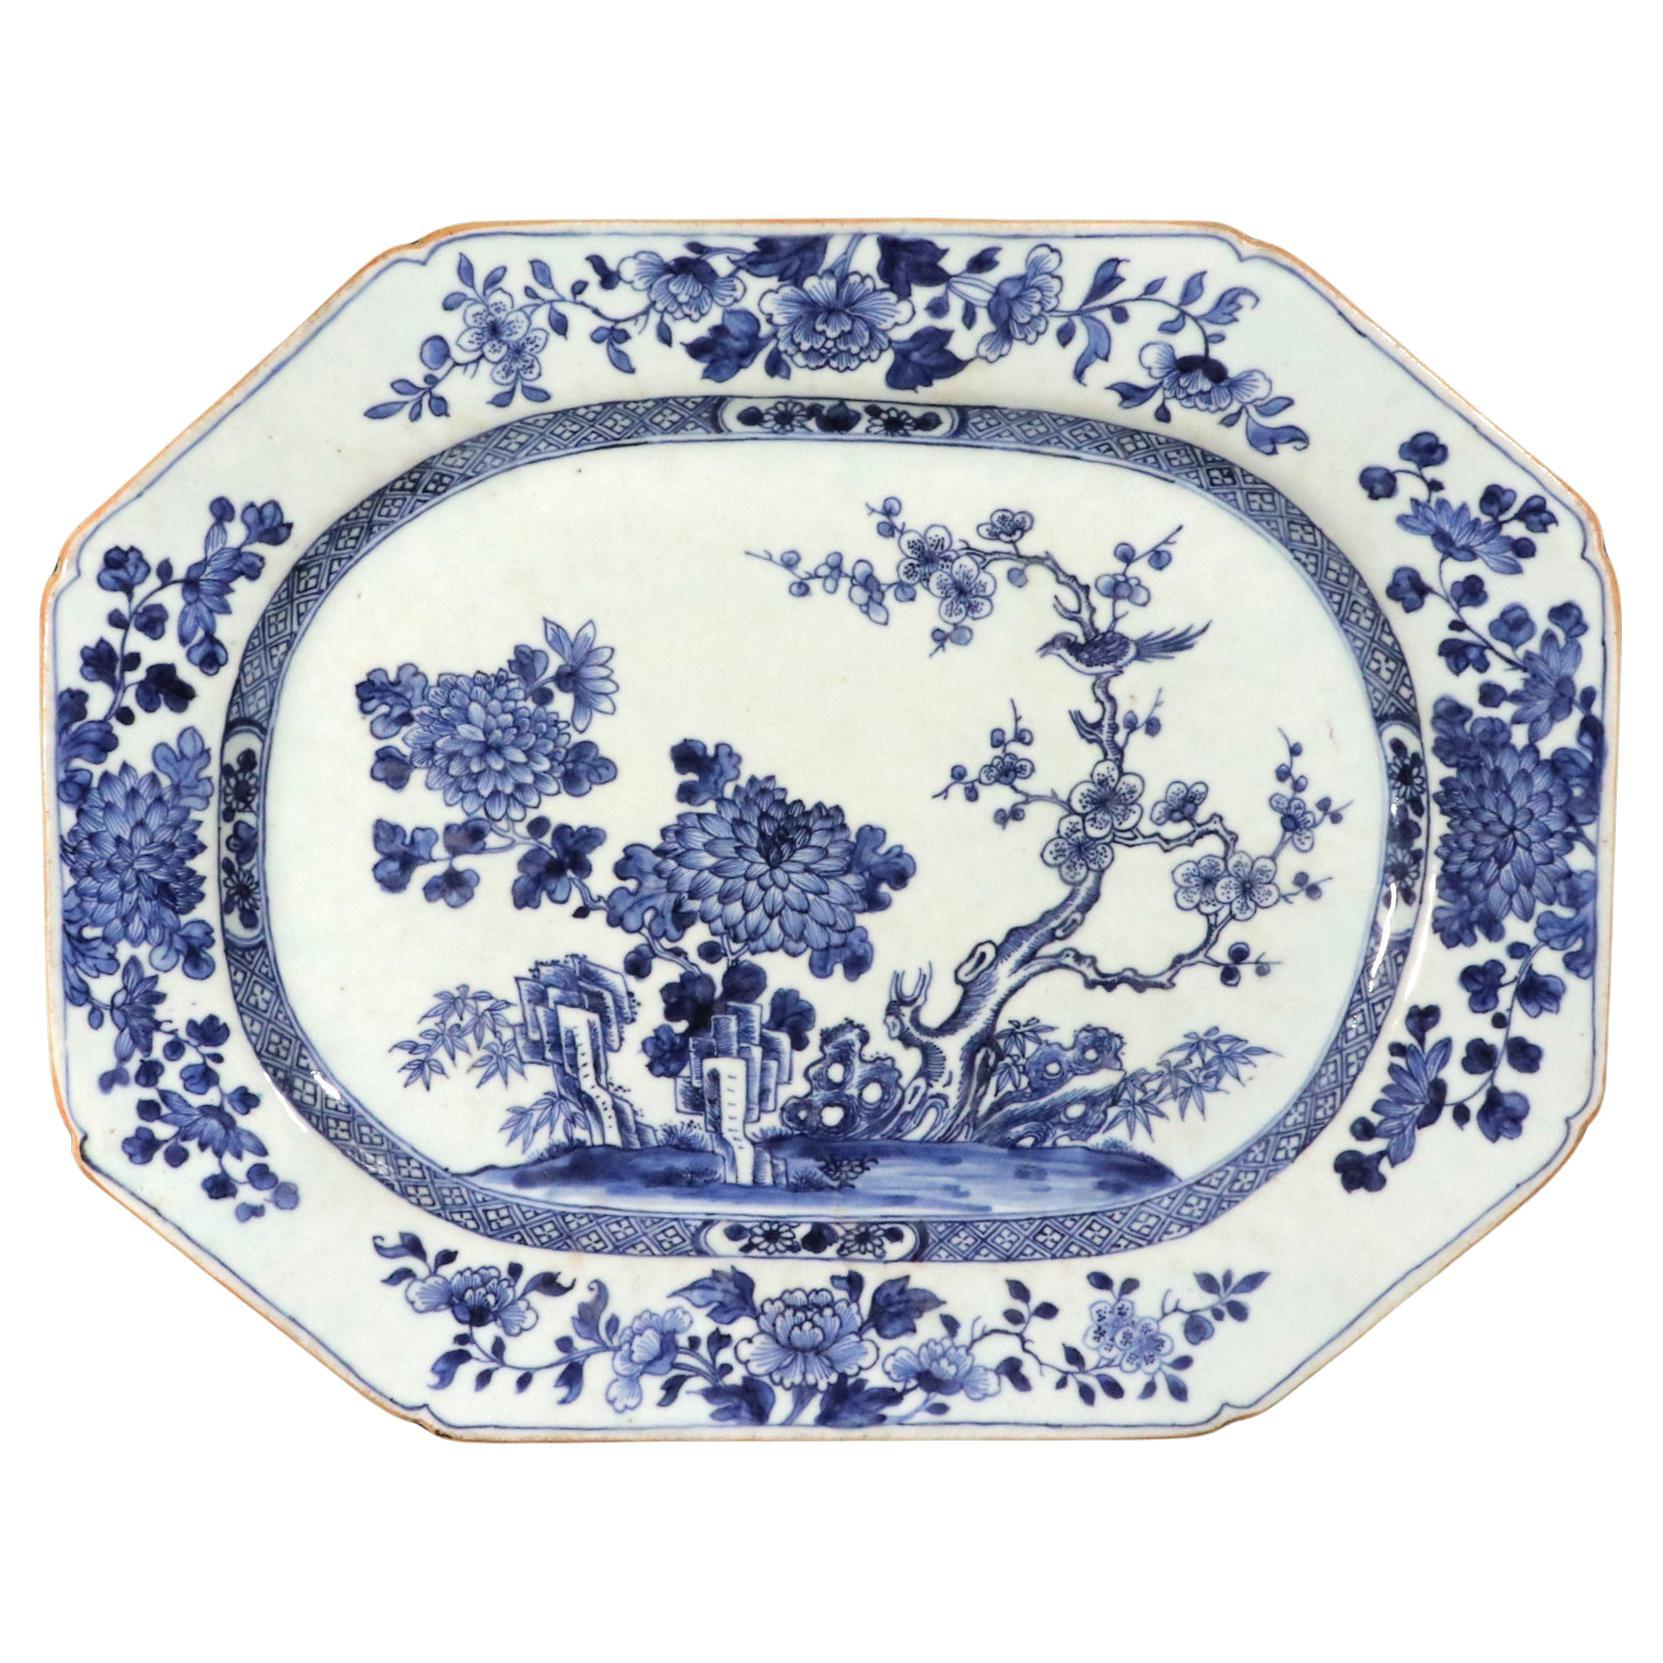 Chinesischer Export Porzellan Unterglasurblau Geformte Botanische Schale